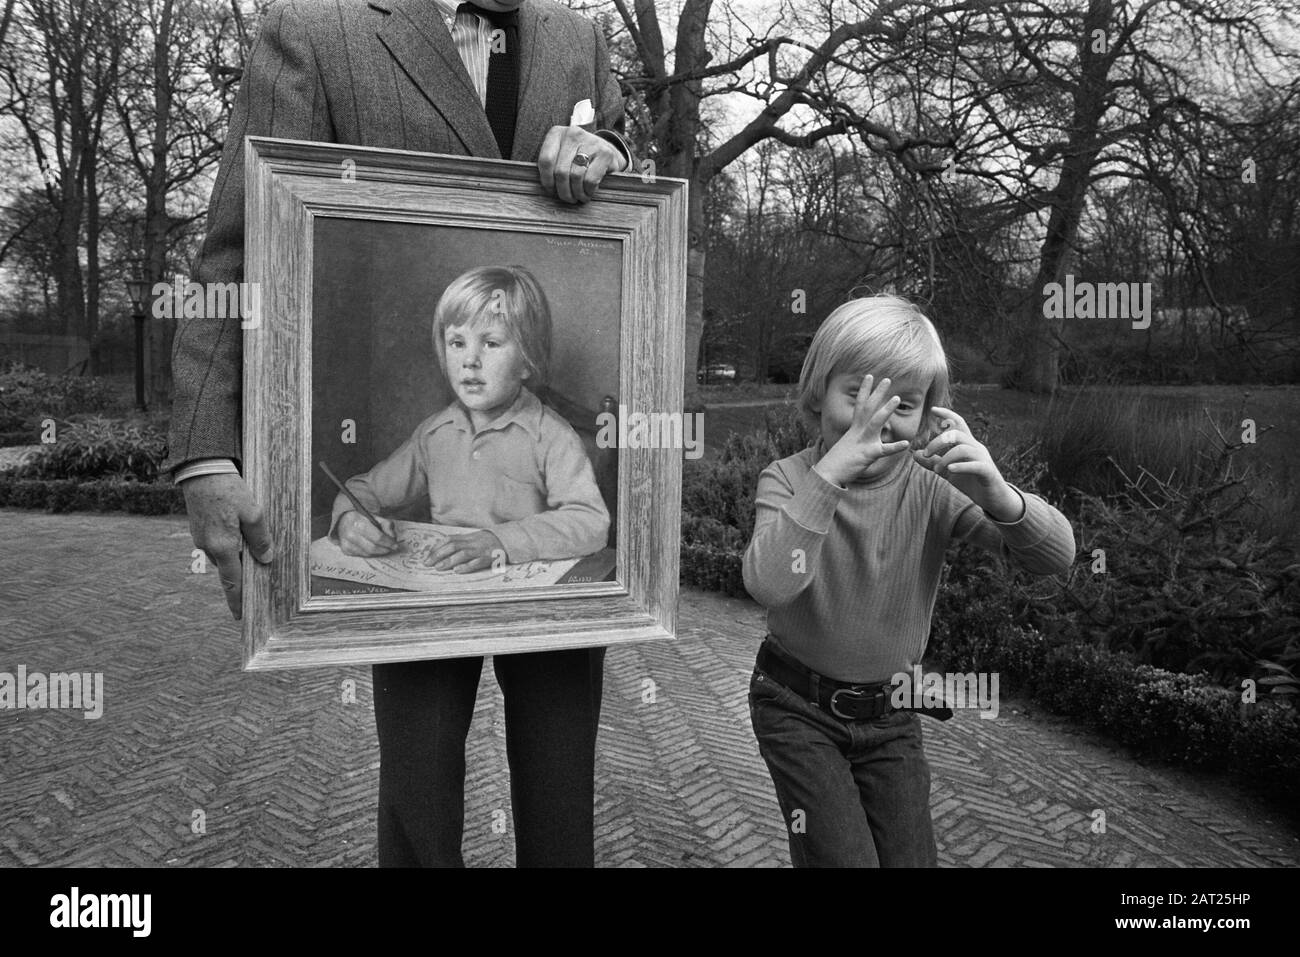 Gemälde von Prinz Willem Alexander zum sechsten Jahrestag, Willem-Alexander beim Gemälde (zeichnet verrückte Gesichter, imitiert den Fotografen). Person links (unsichtbarer Kopf): Charles van Veen. Datum: 16.April 1973; Stockfoto